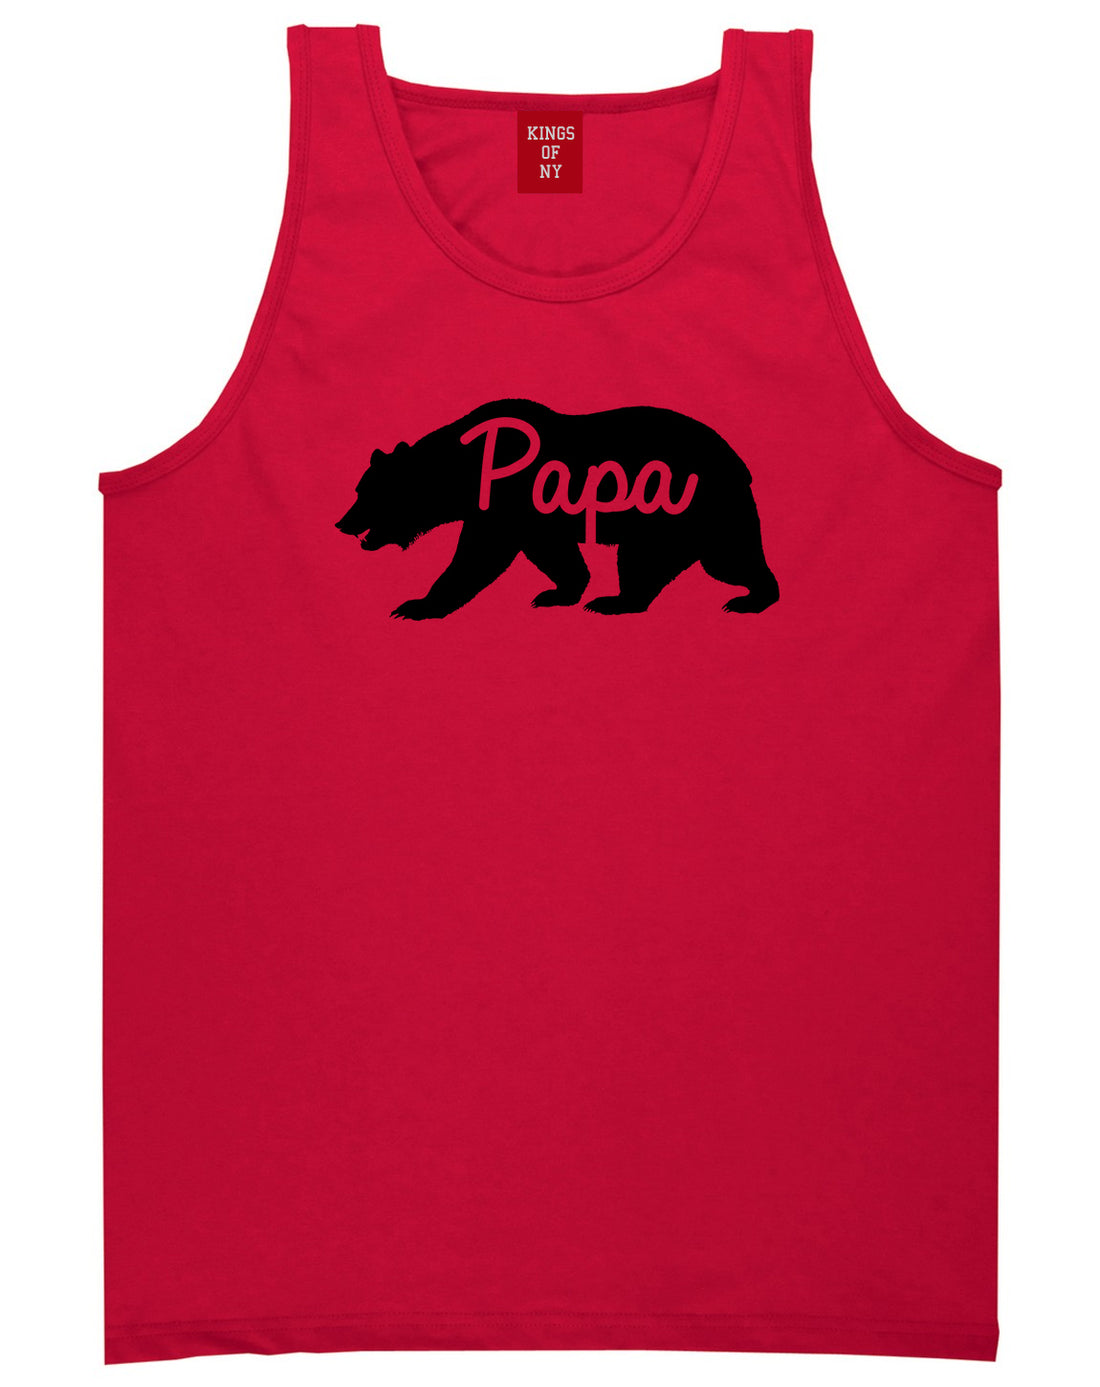 Papa Bear Mens Tank Top Shirt Red by Kings Of NY